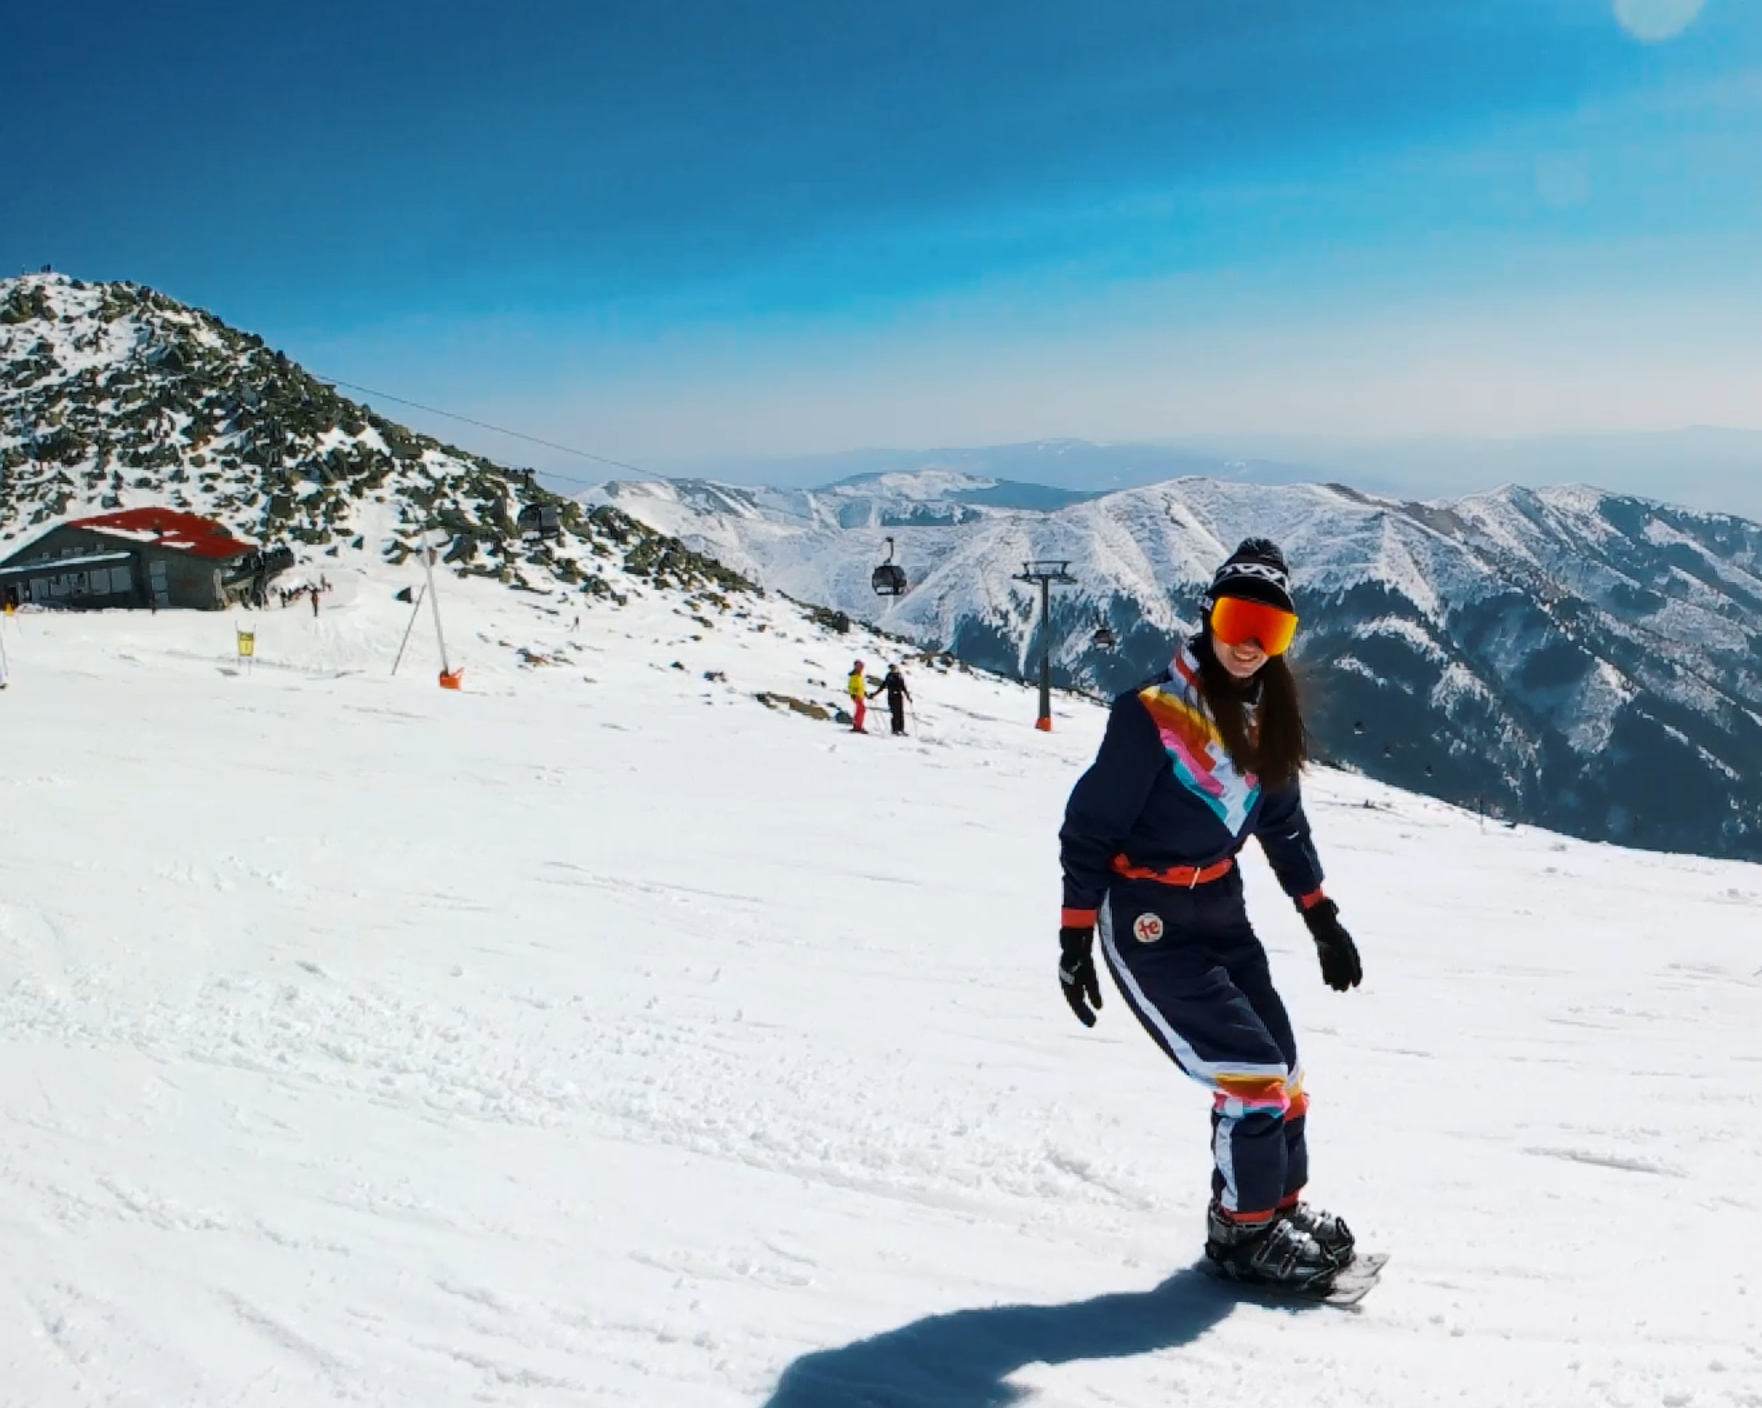 Are Short Skis Better for Beginners?